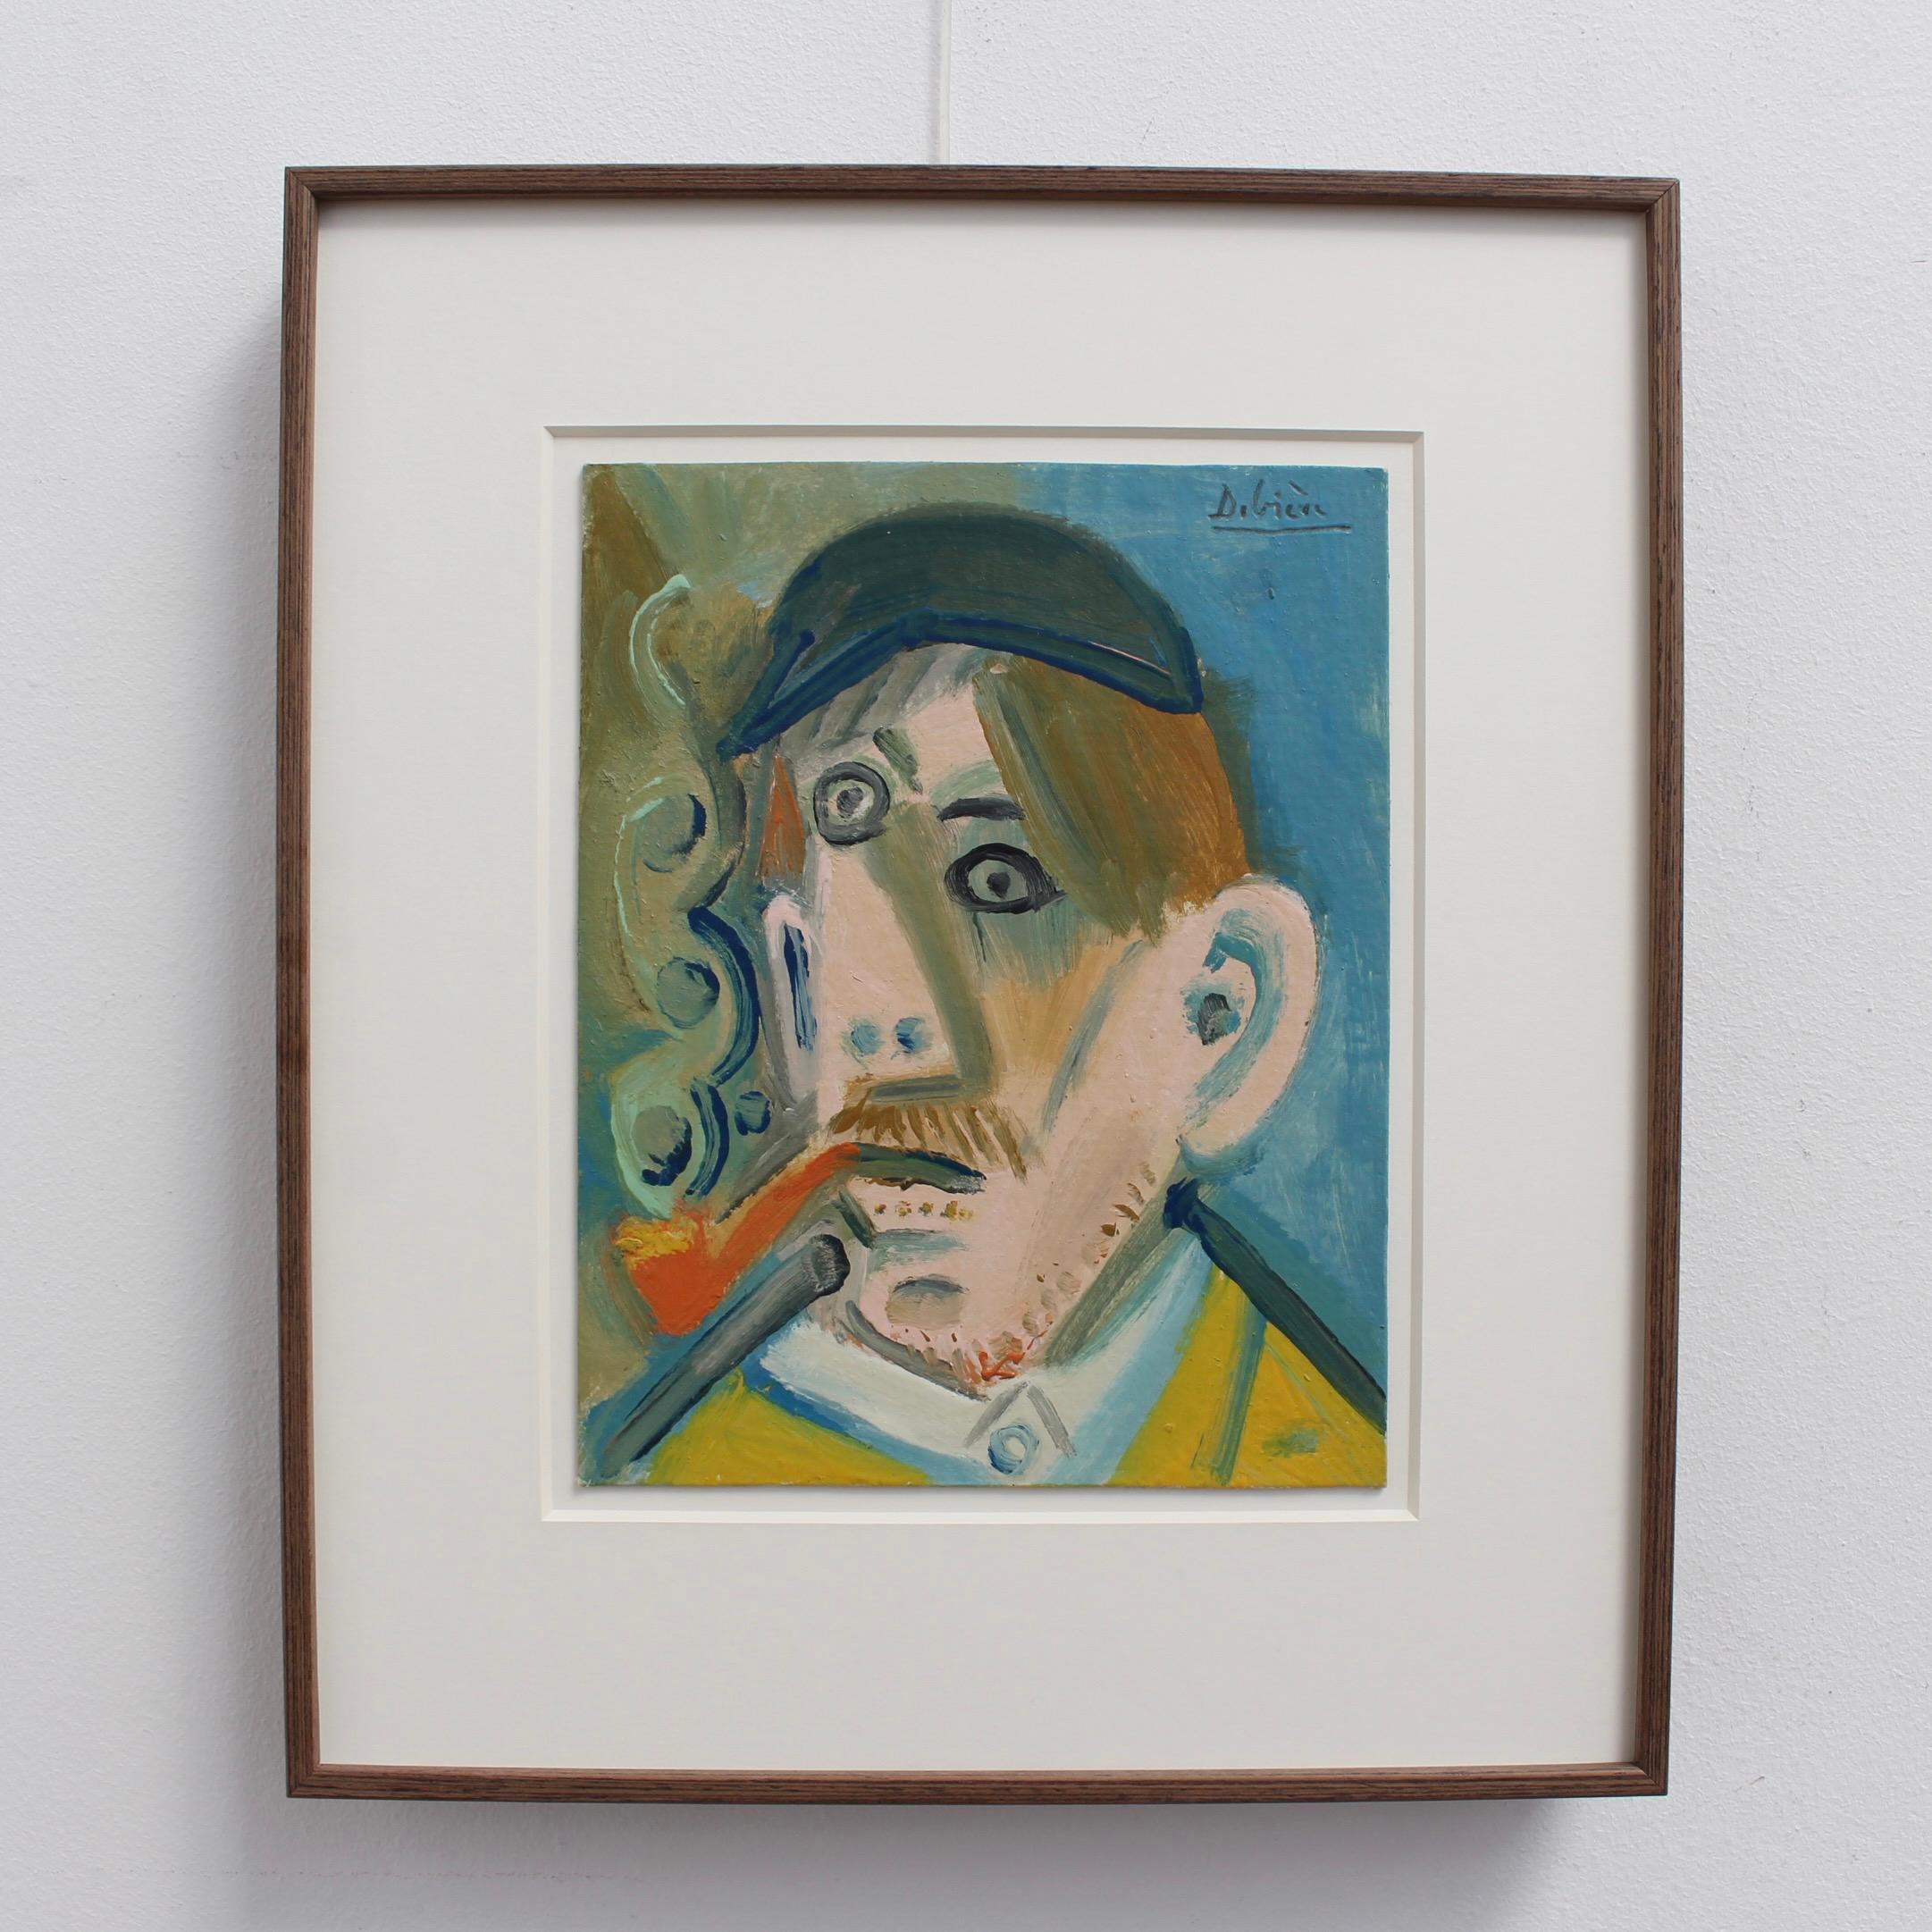 Mann raucht eine Pfeife – Painting von Raymond Debieve